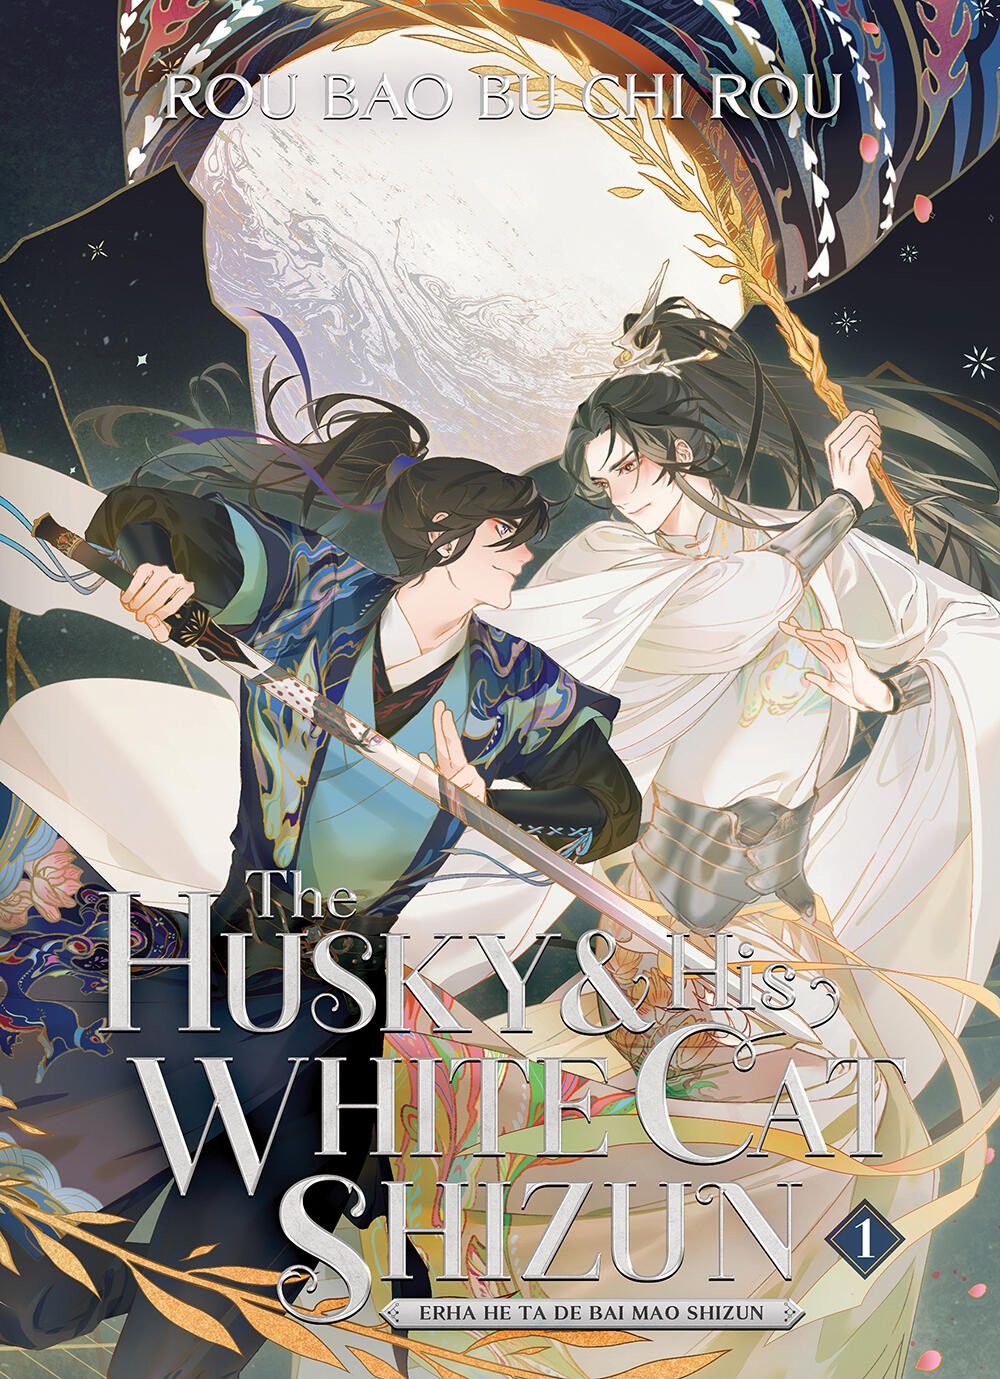 The Husky and His White Cat Shizun by Rou Bao Bu Chi Rou